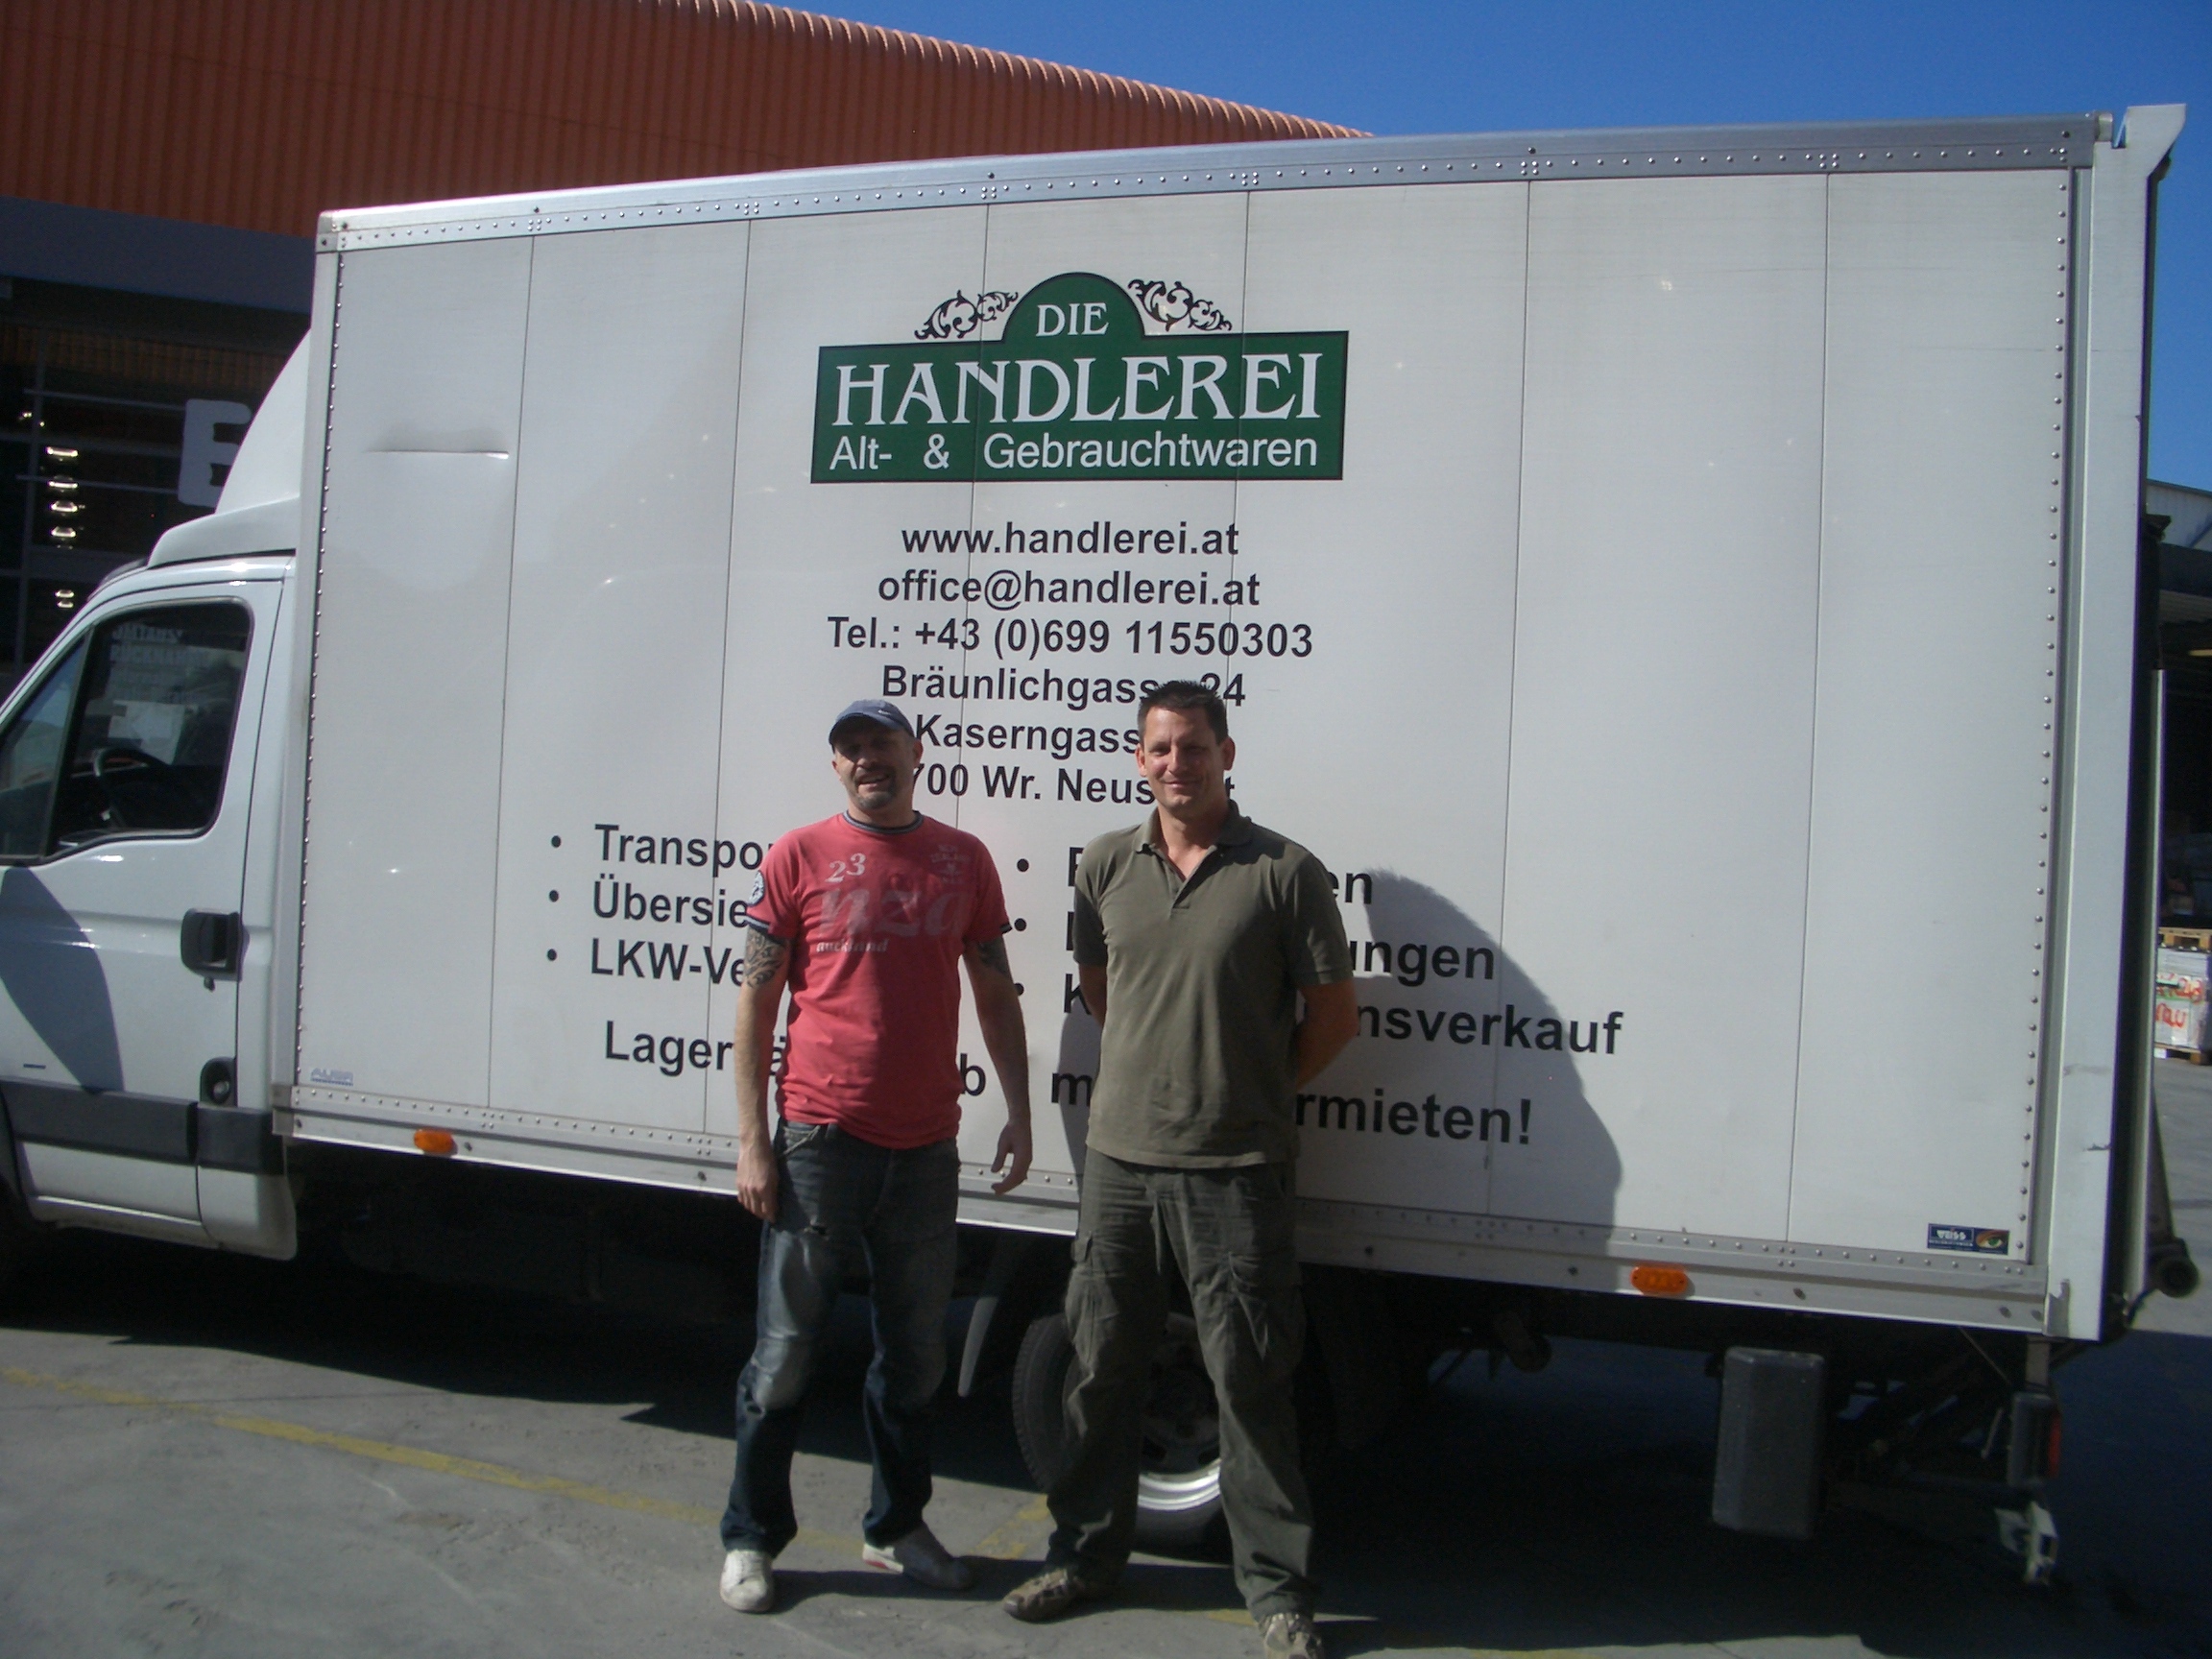 Herr Kail und Mitarbeiter der Handlerei, deren LKW als Transportmittel diente